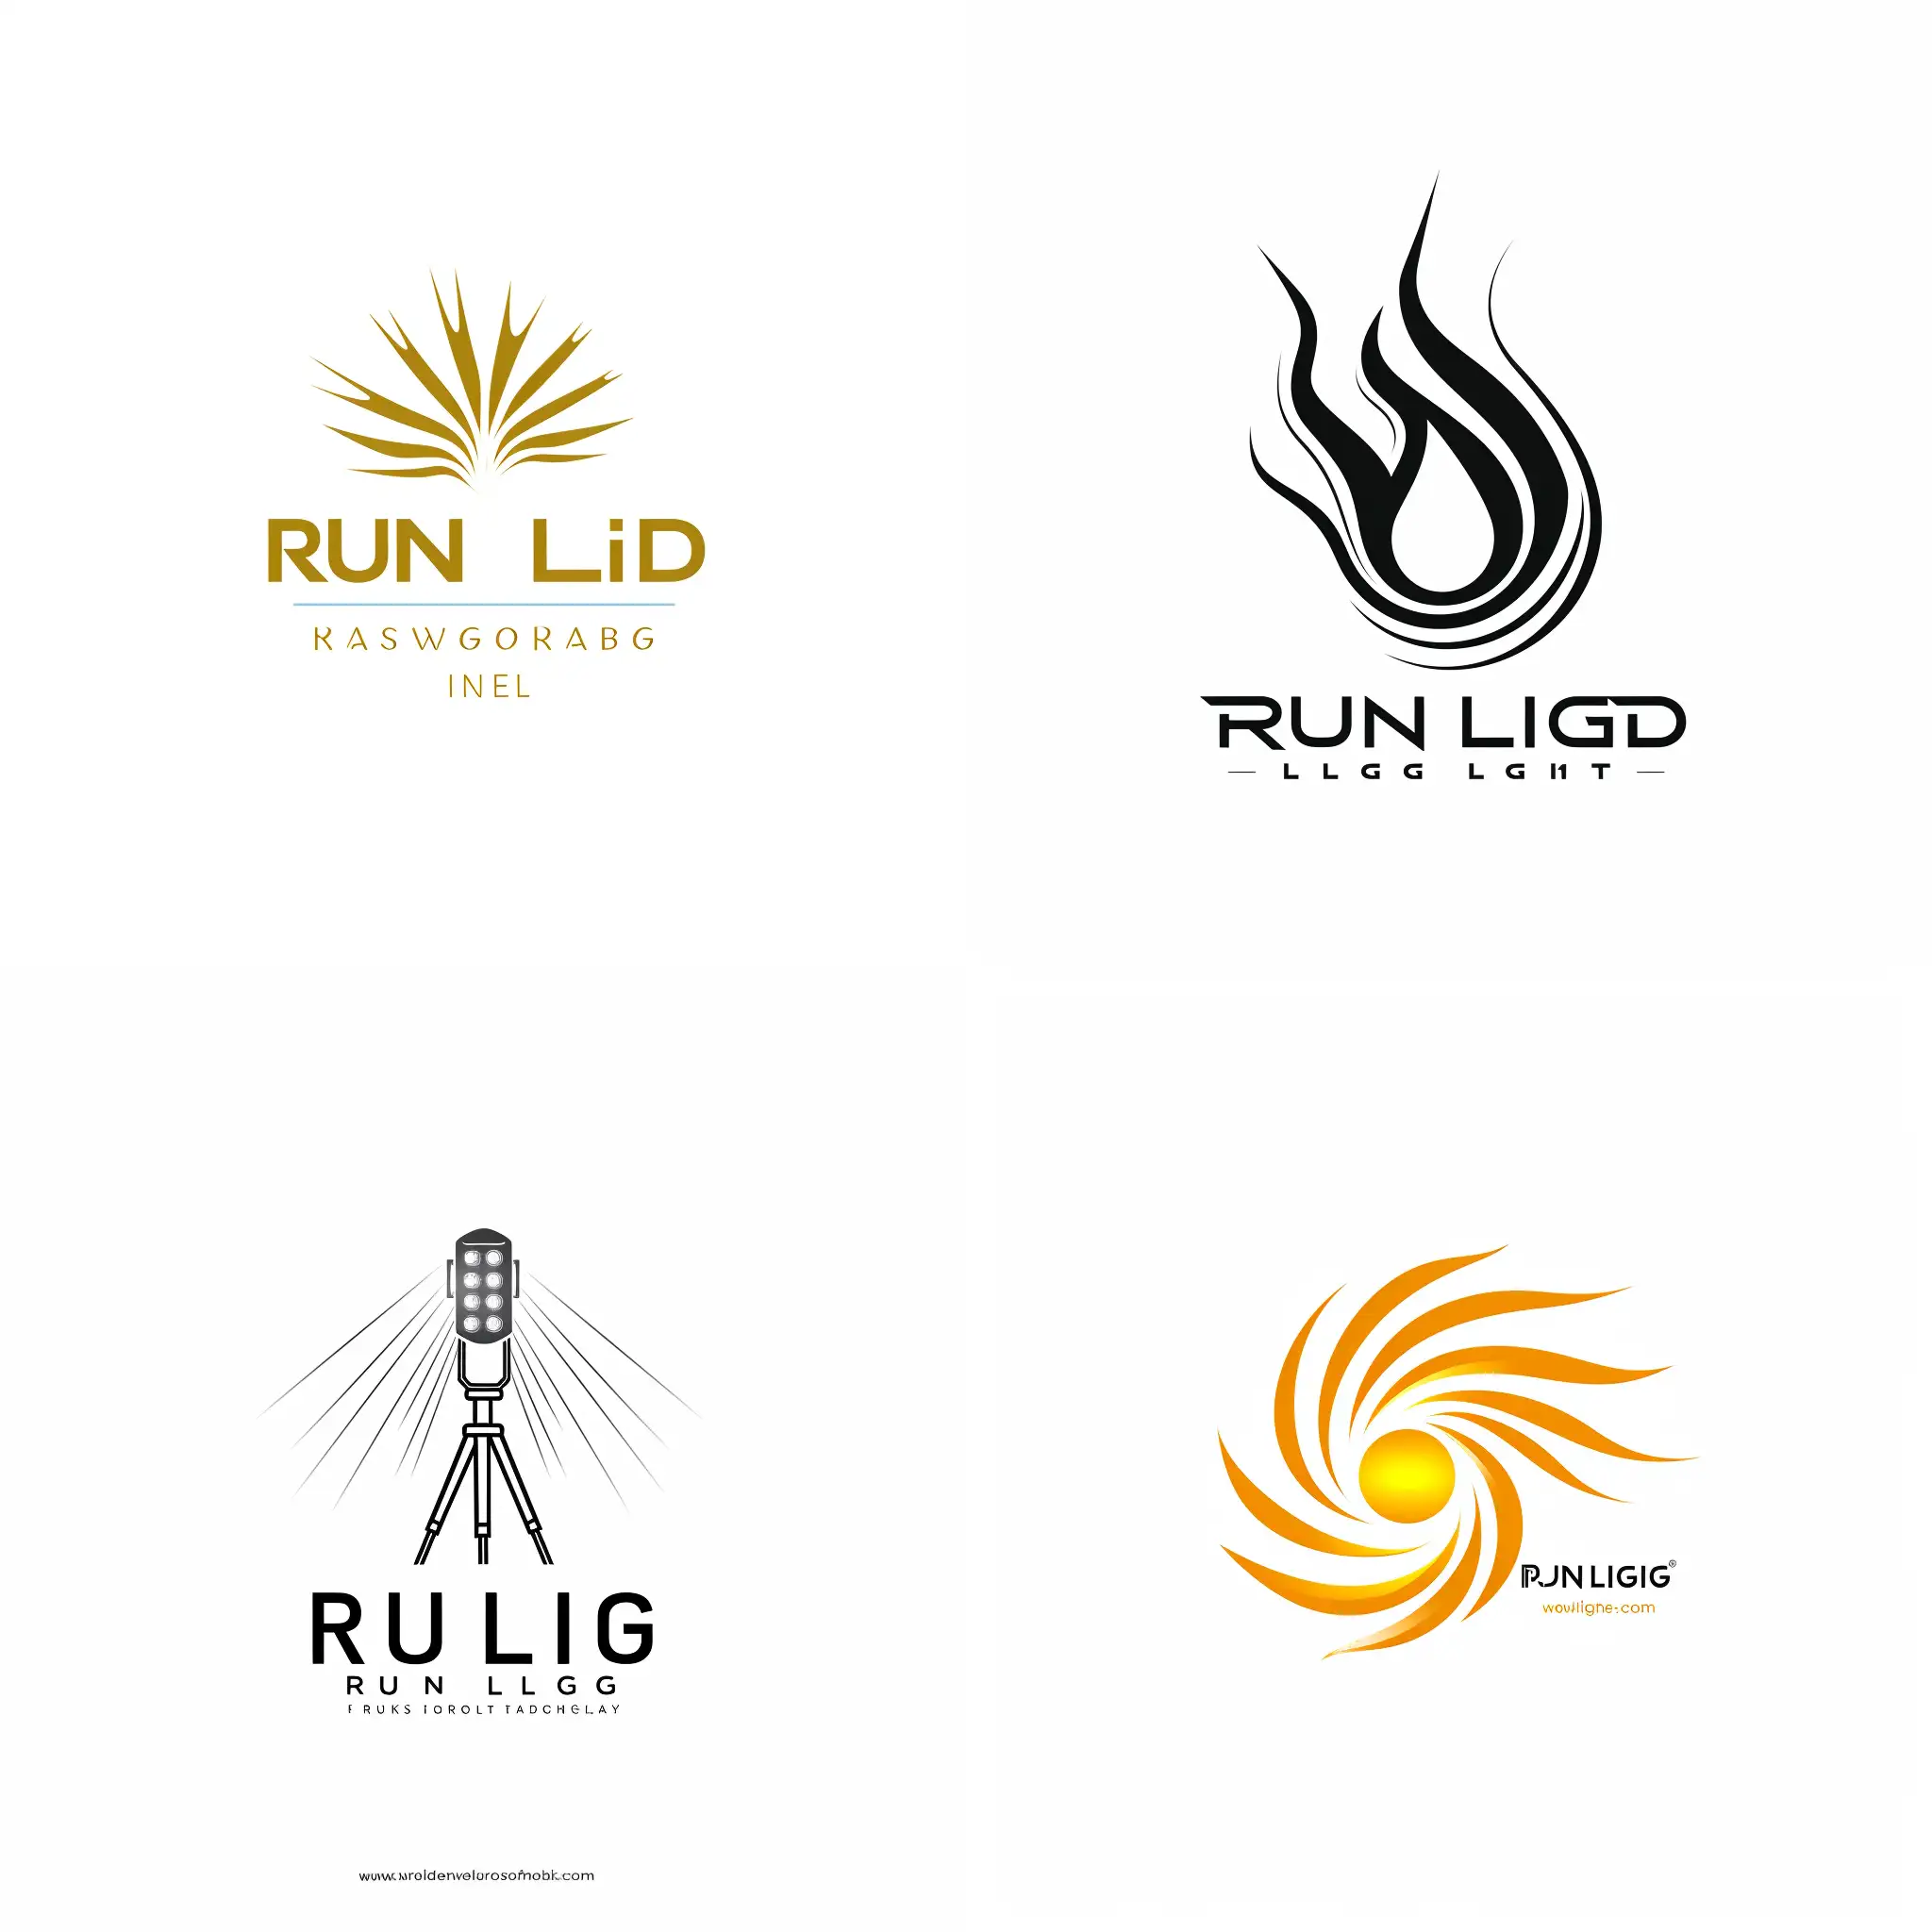 Создай логотип, на белом фоне, для компании, которая производит осветительное оборудование. Название компании: Run Light